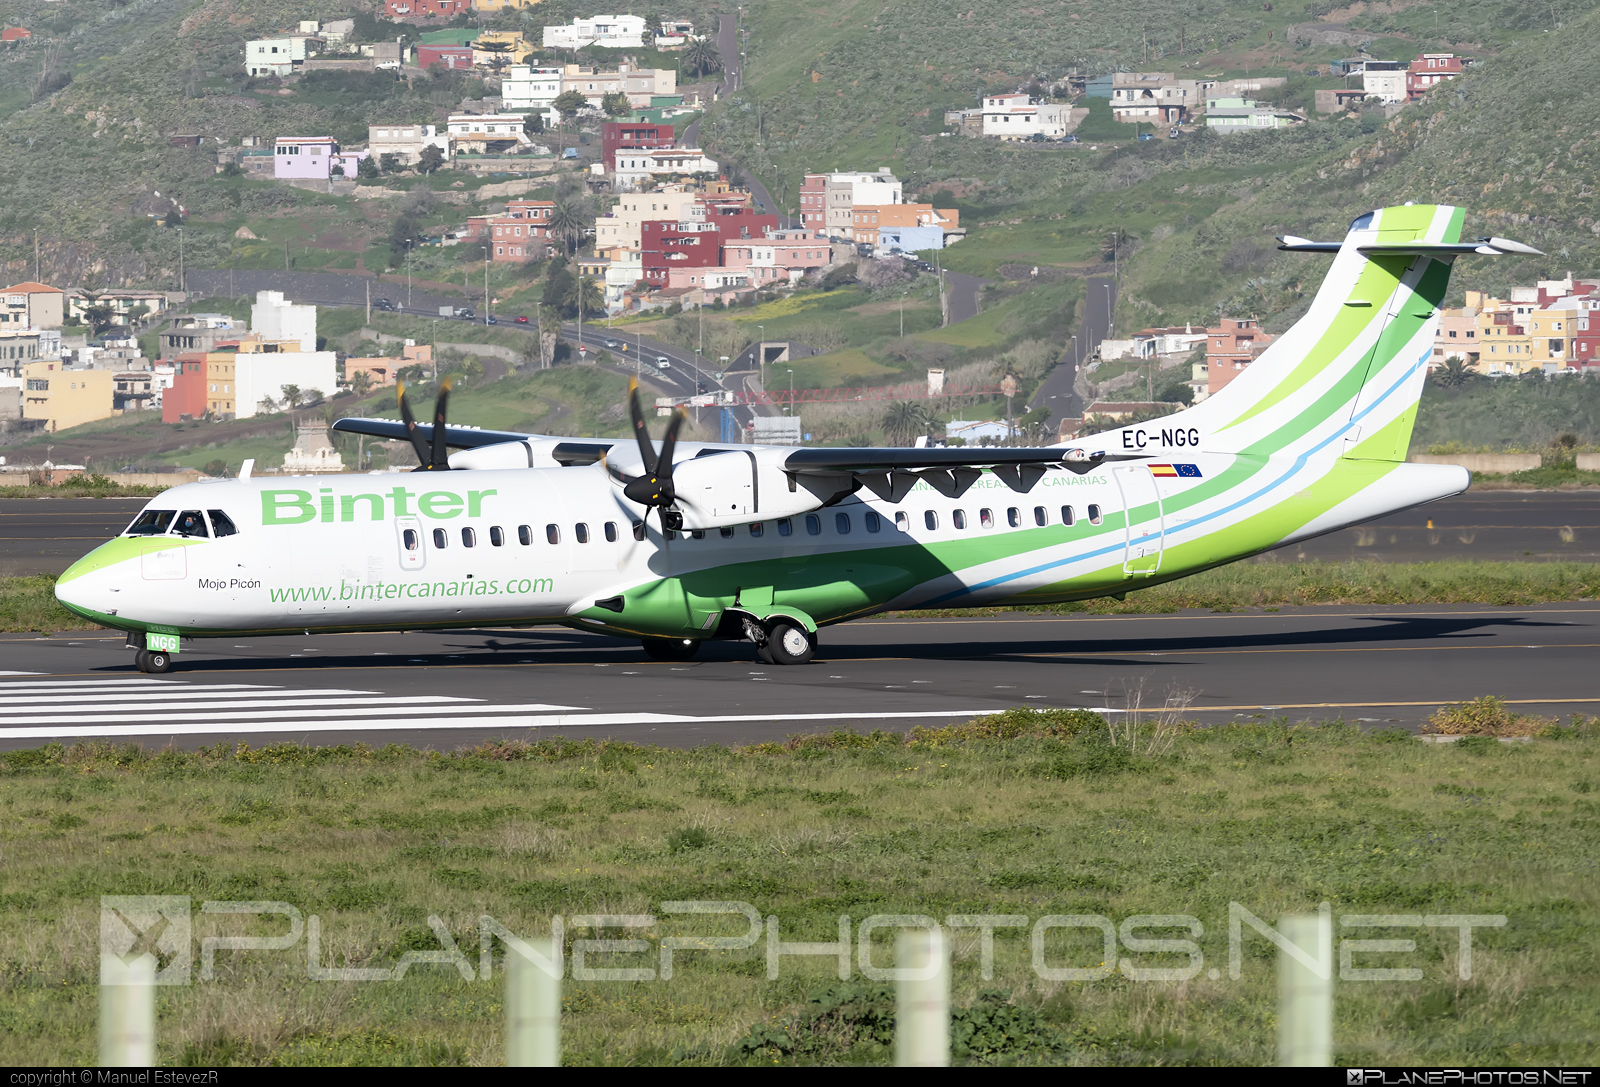 ATR 72-600 - EC-NGG operated by Binter Canarias #BinterCanarias #atr #atr72 #atr72600